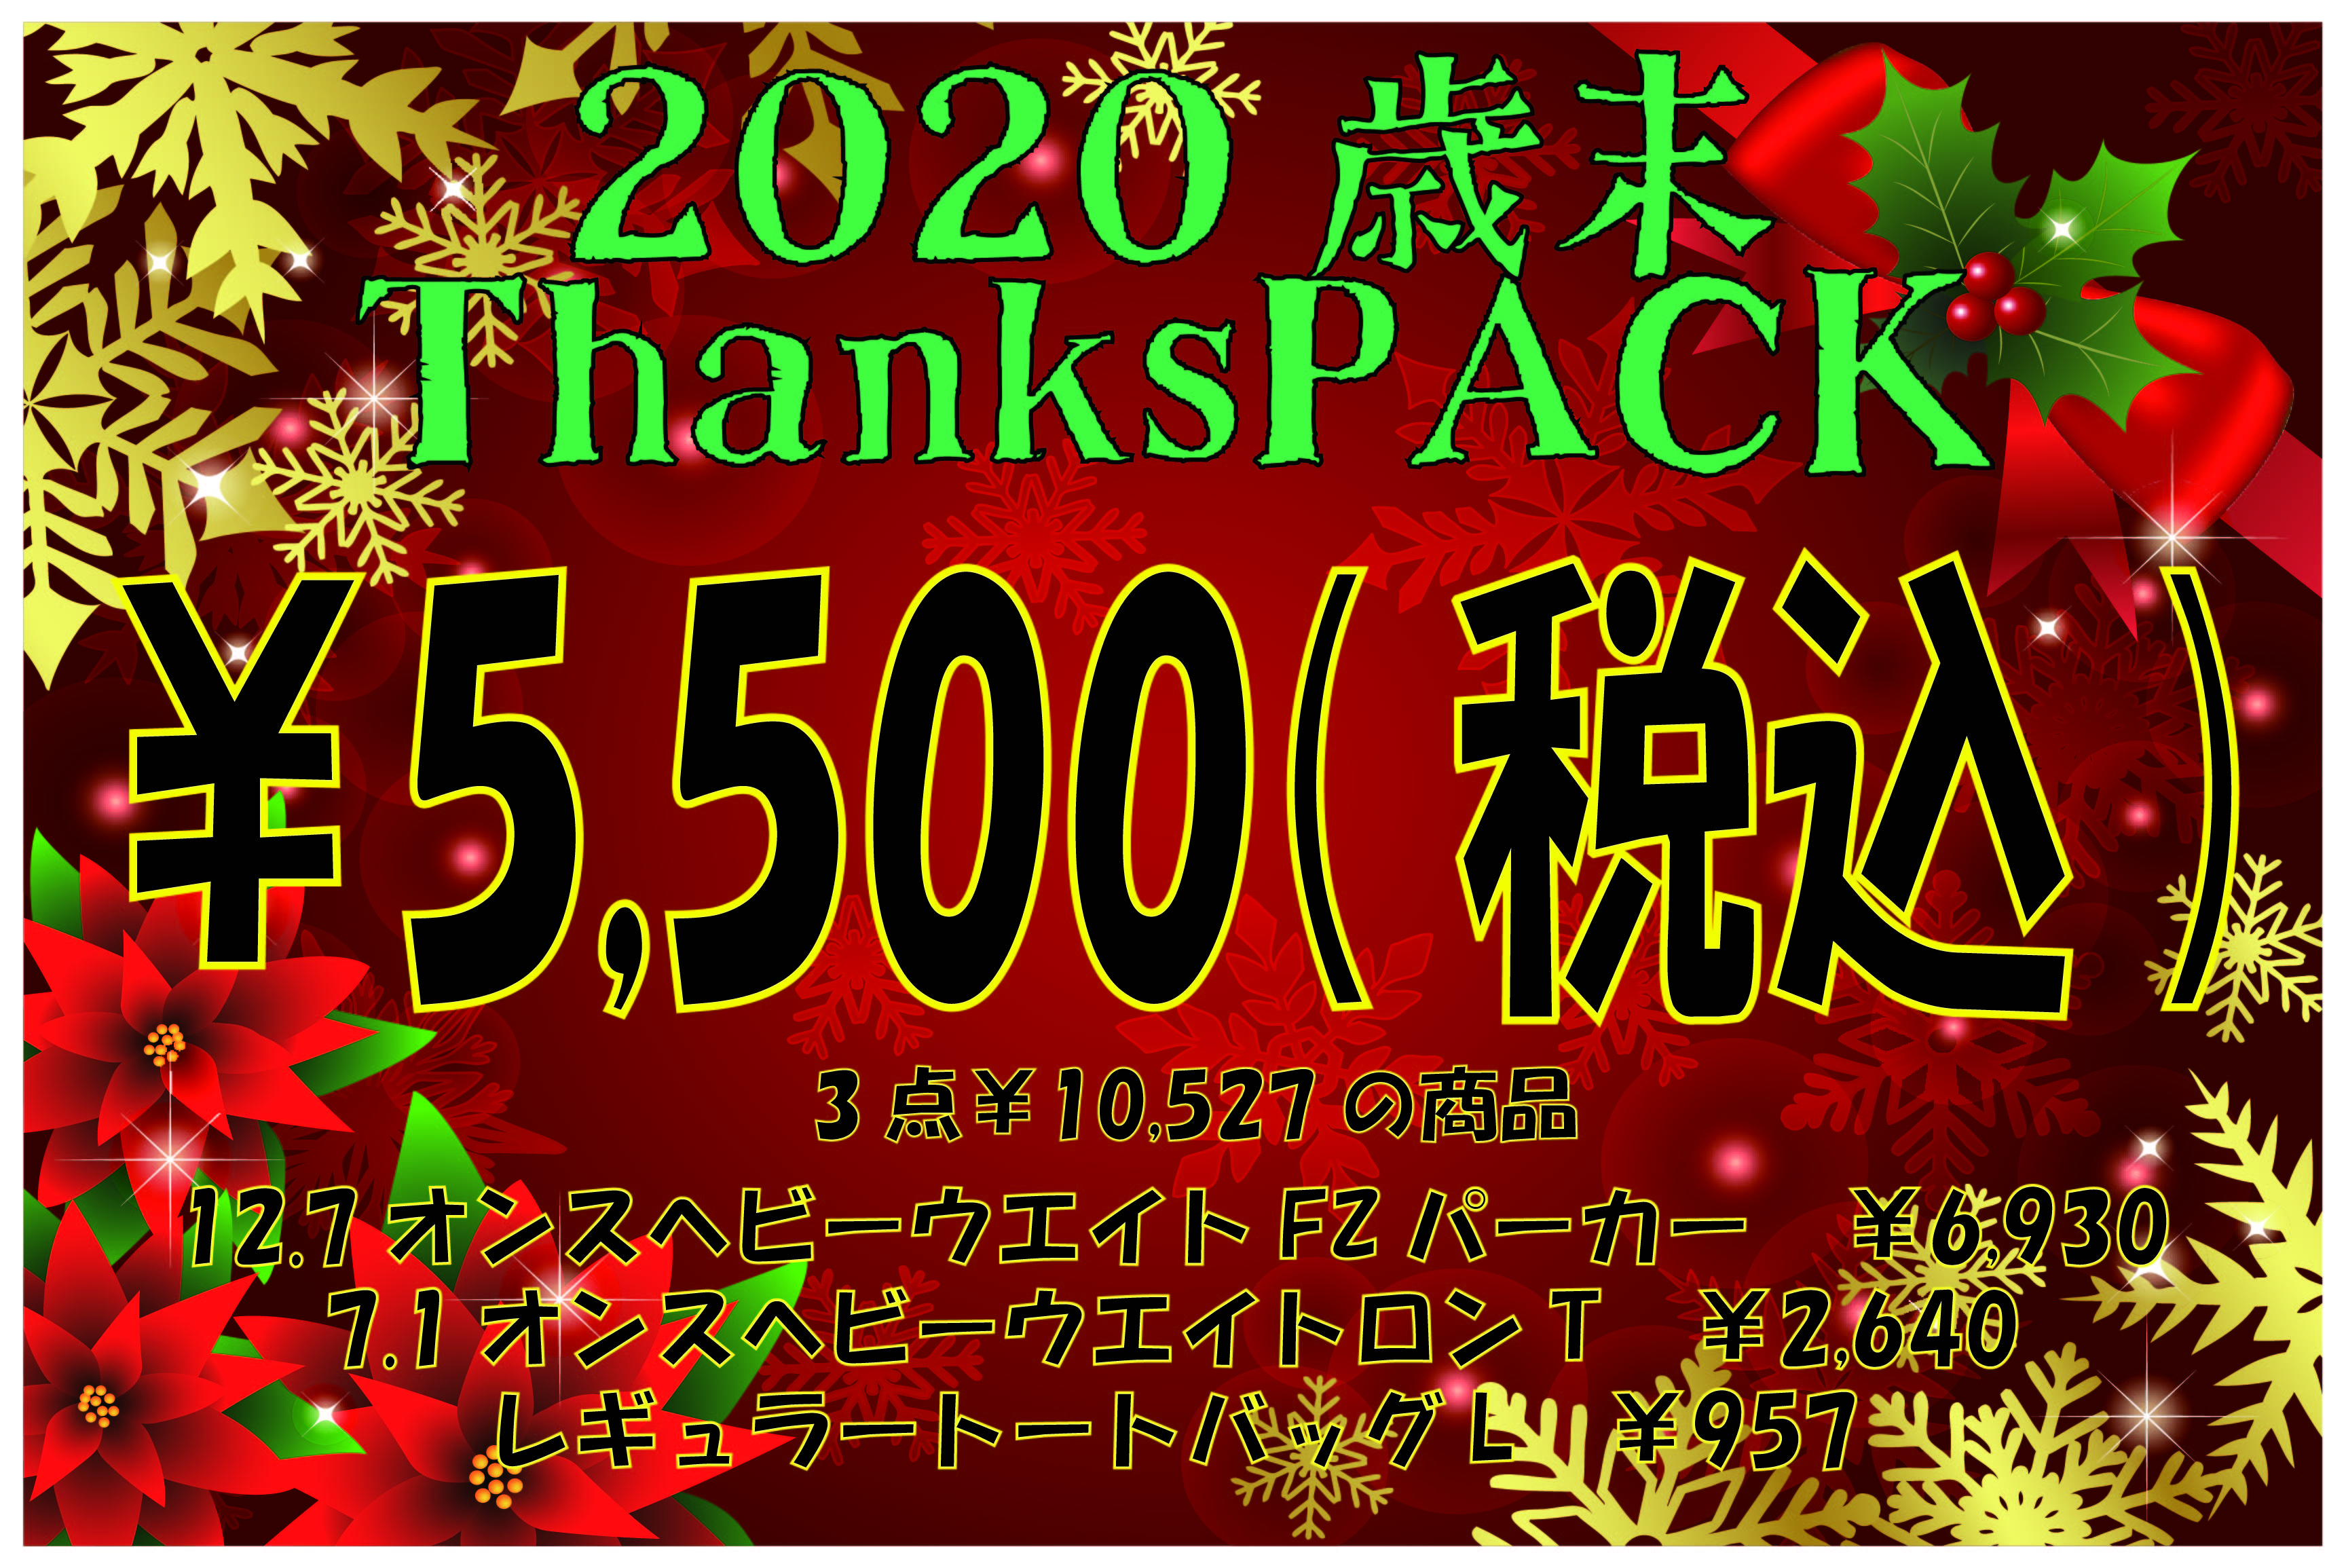 【2020歳末ThanksPACK】